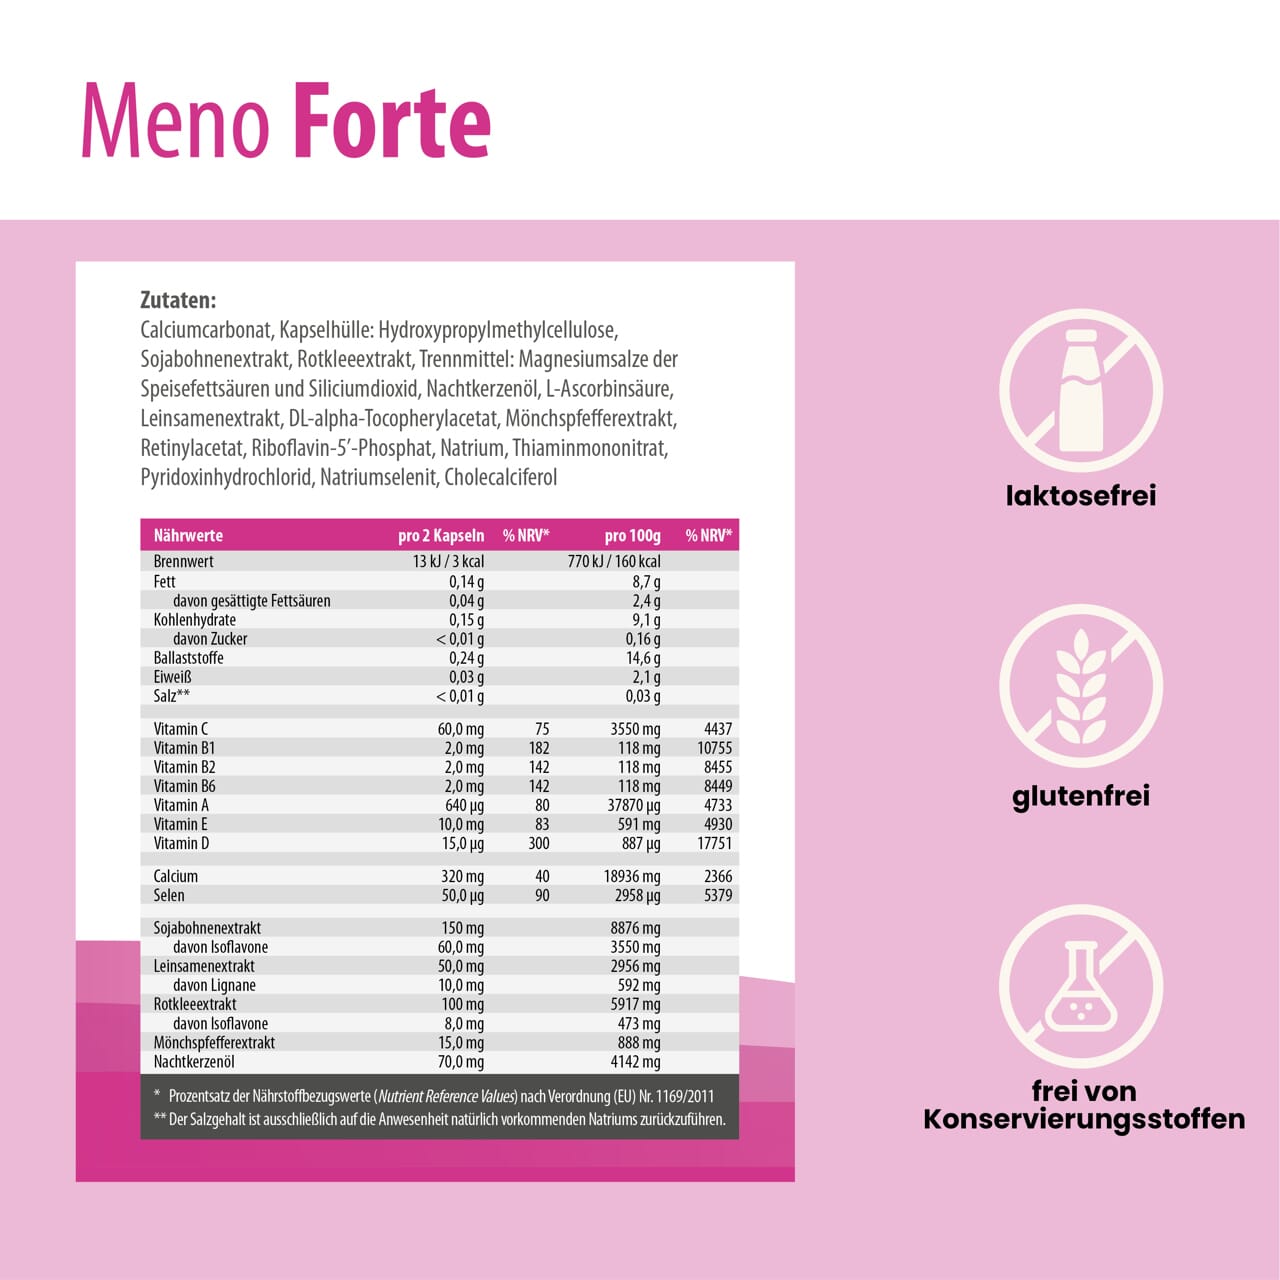 Nährwertinformationen und Zutaten von SanaExpert Meno Forte auf einem Infoblatt mit Symbolen für lactosefrei, glutenfrei und frei von Konservierungsstoffen, pinker Hintergrund.